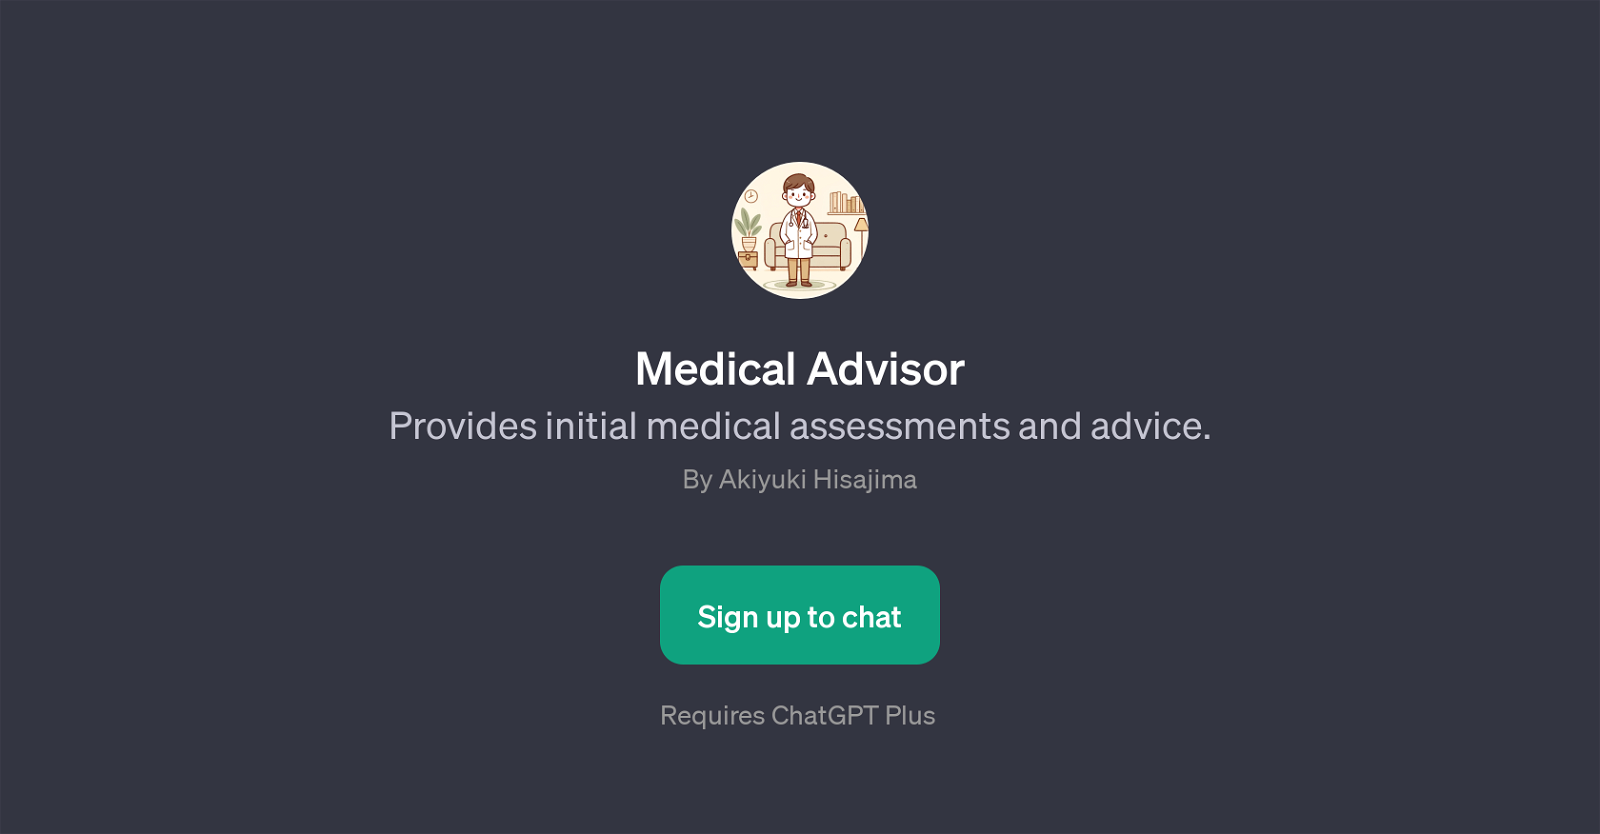 Medical Advisor website